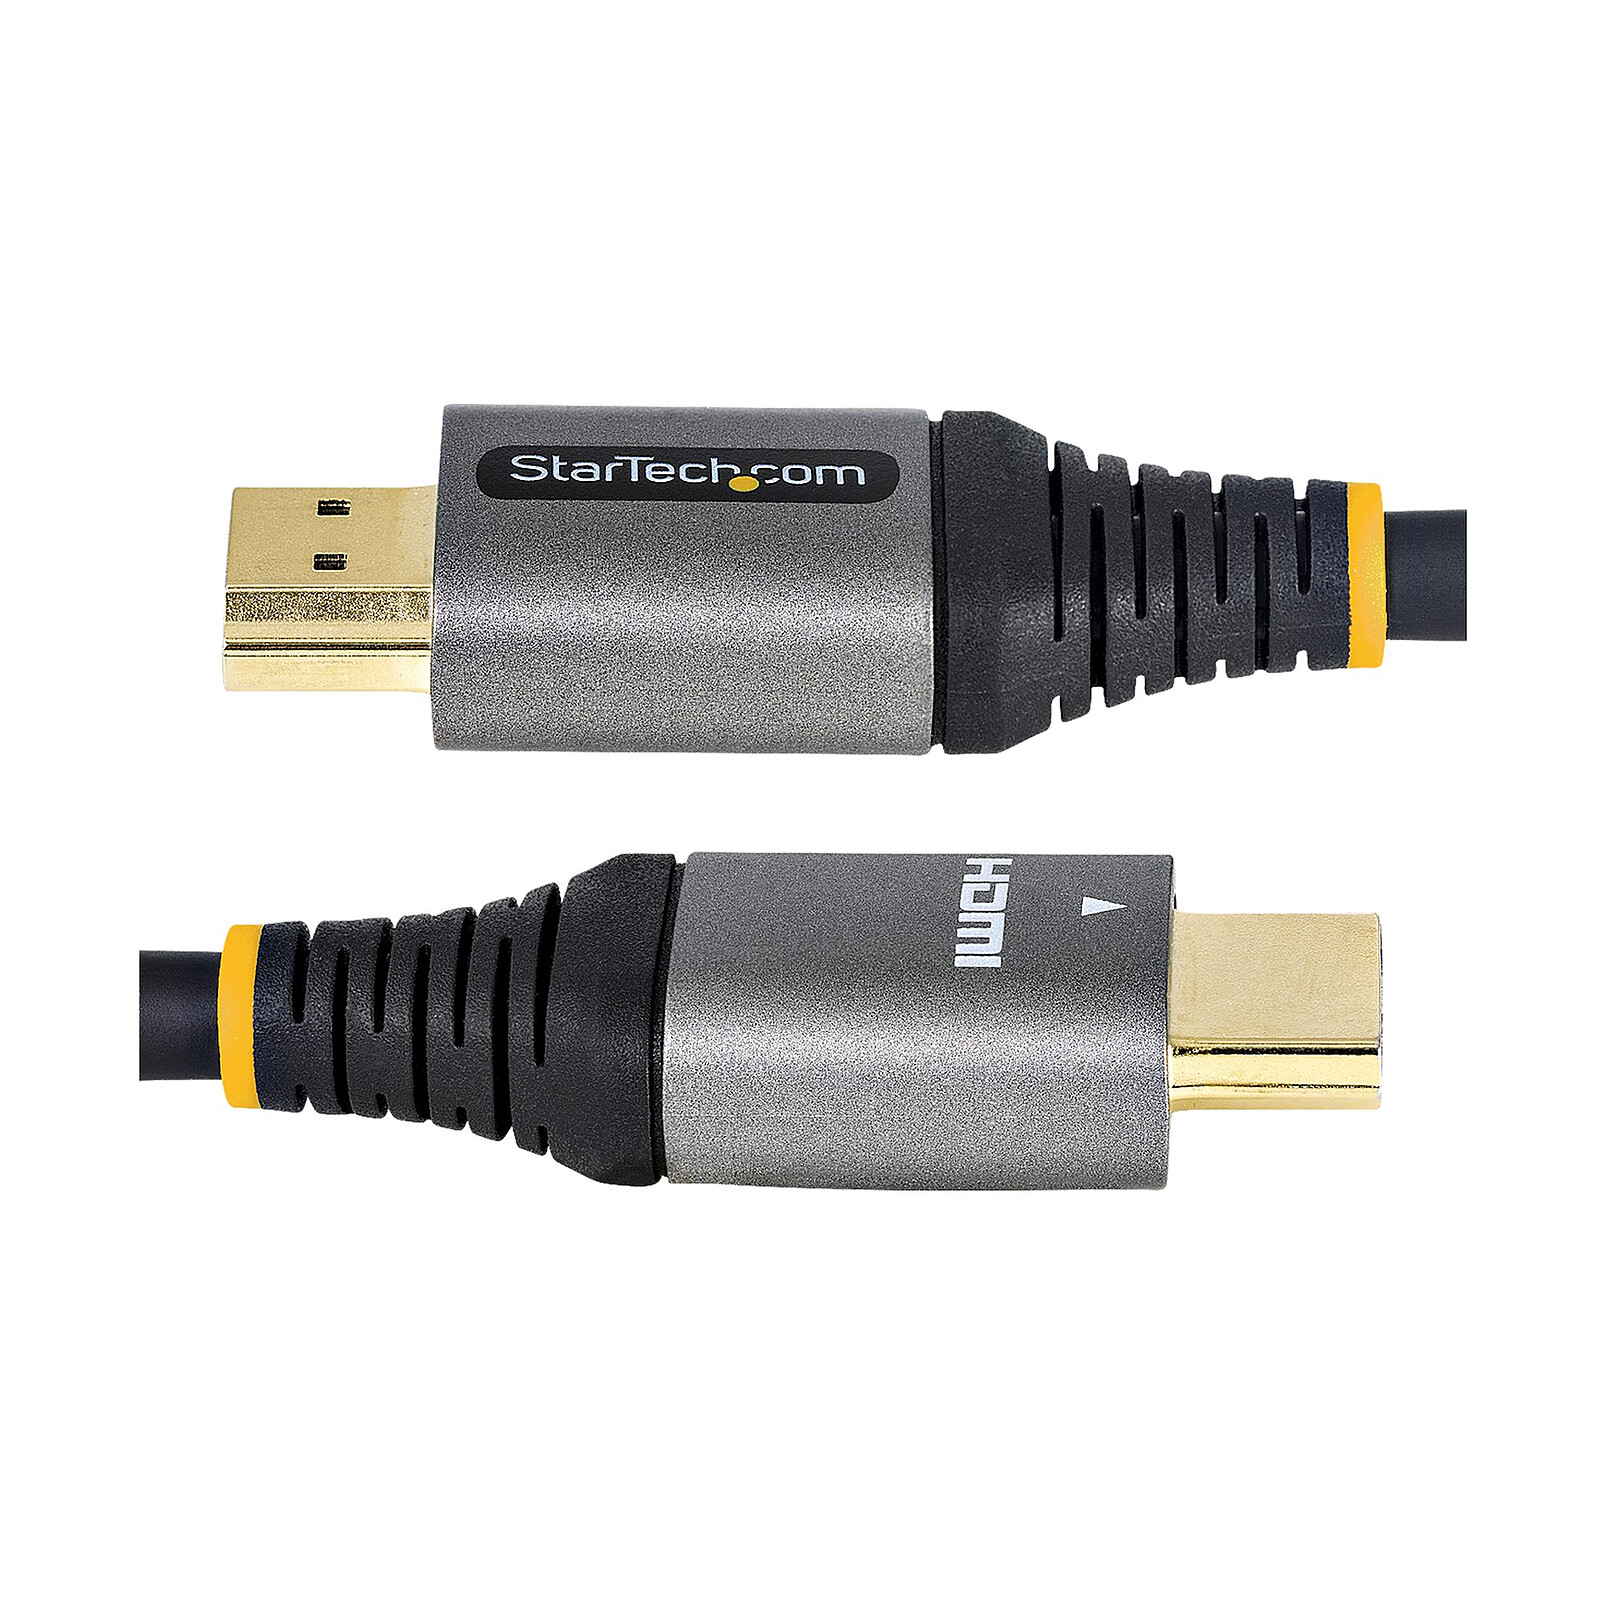 Cable adaptador DisplayPort / HDMI 2.0 activo Clicktronic (3 metros) - HDMI  - LDLC